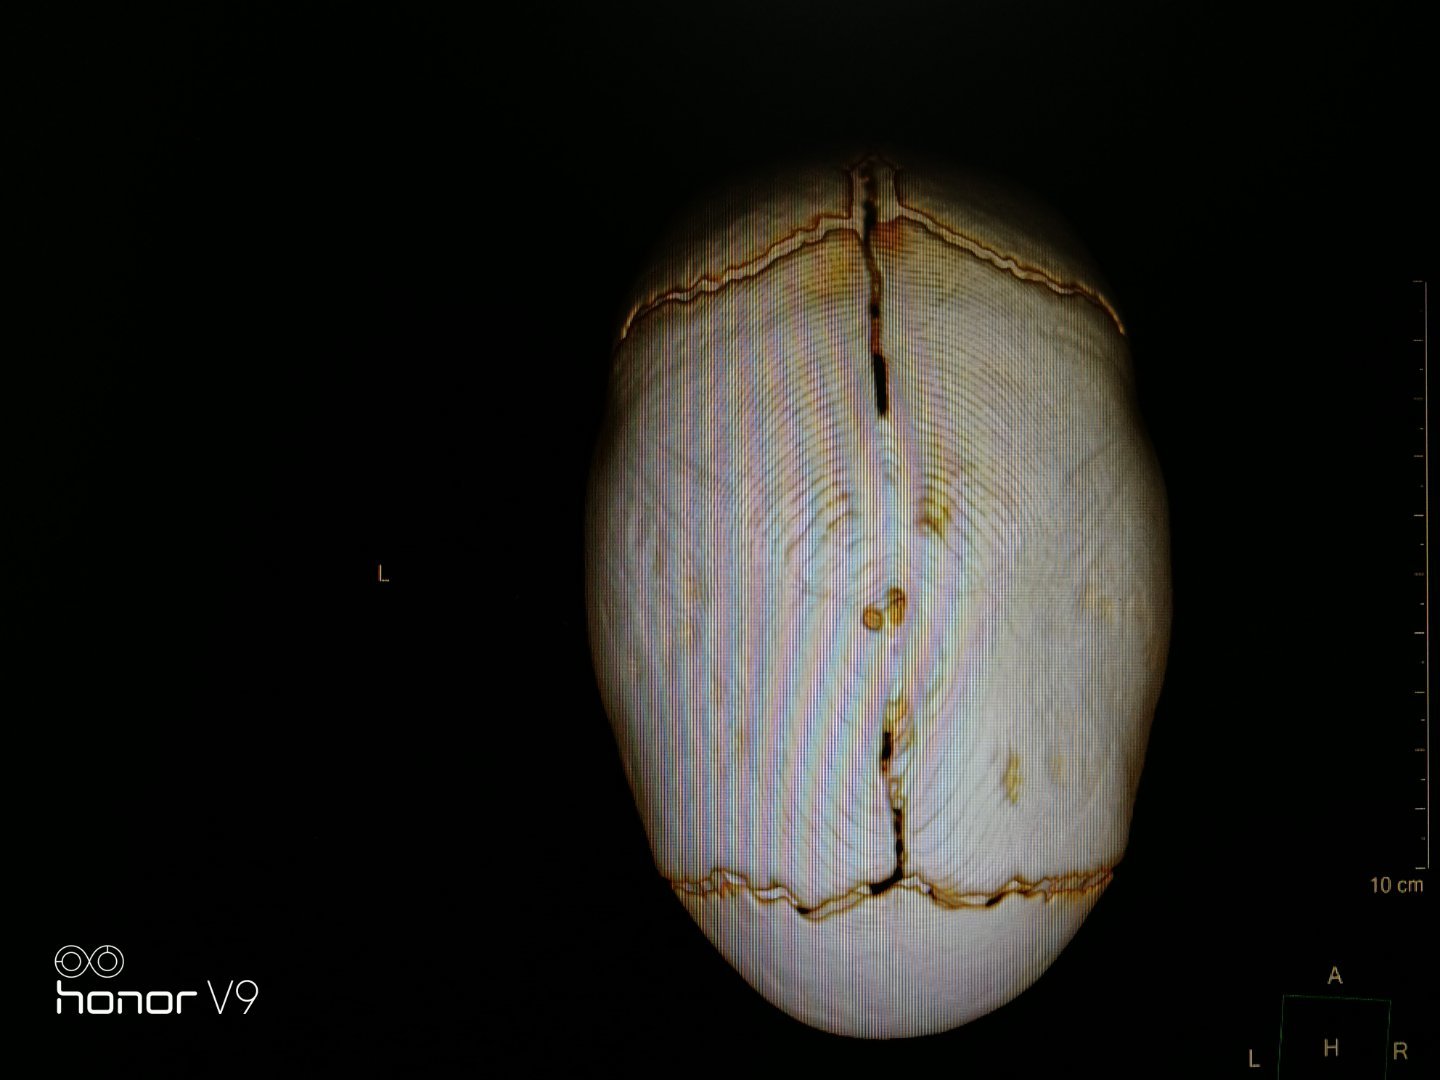 胎头矢状缝的位置图片图片